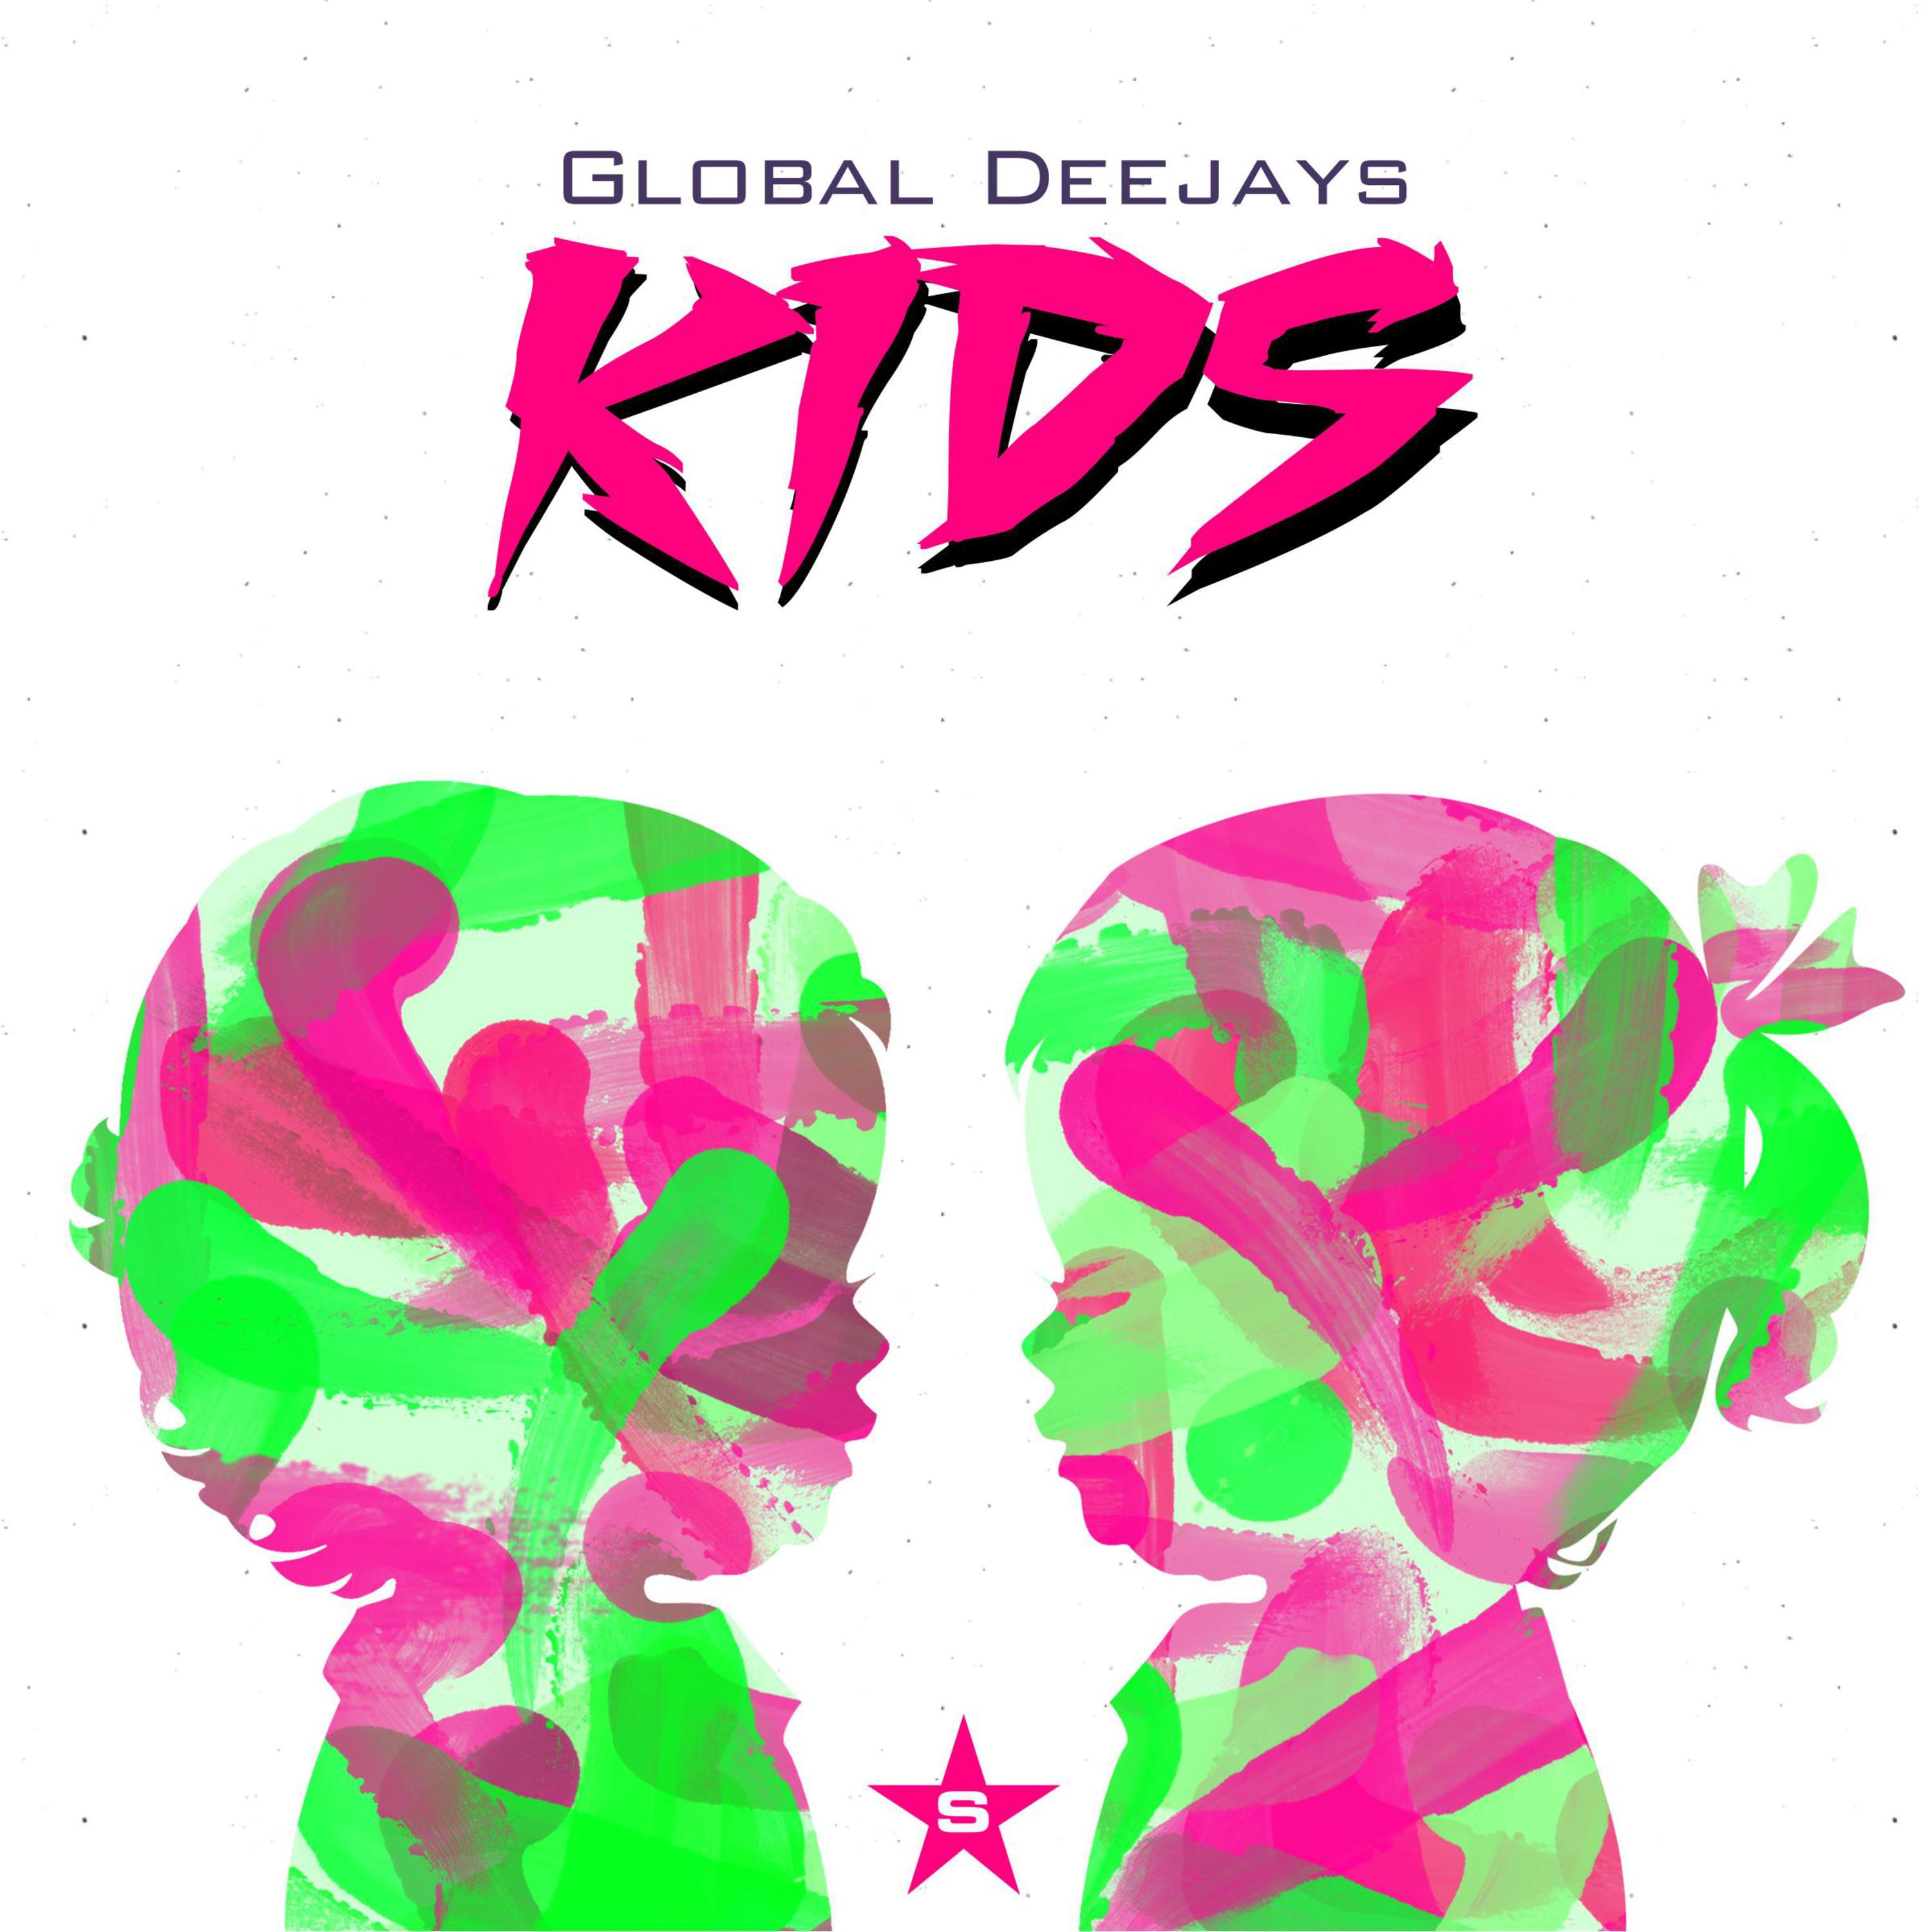 Kids (Radio Edit)